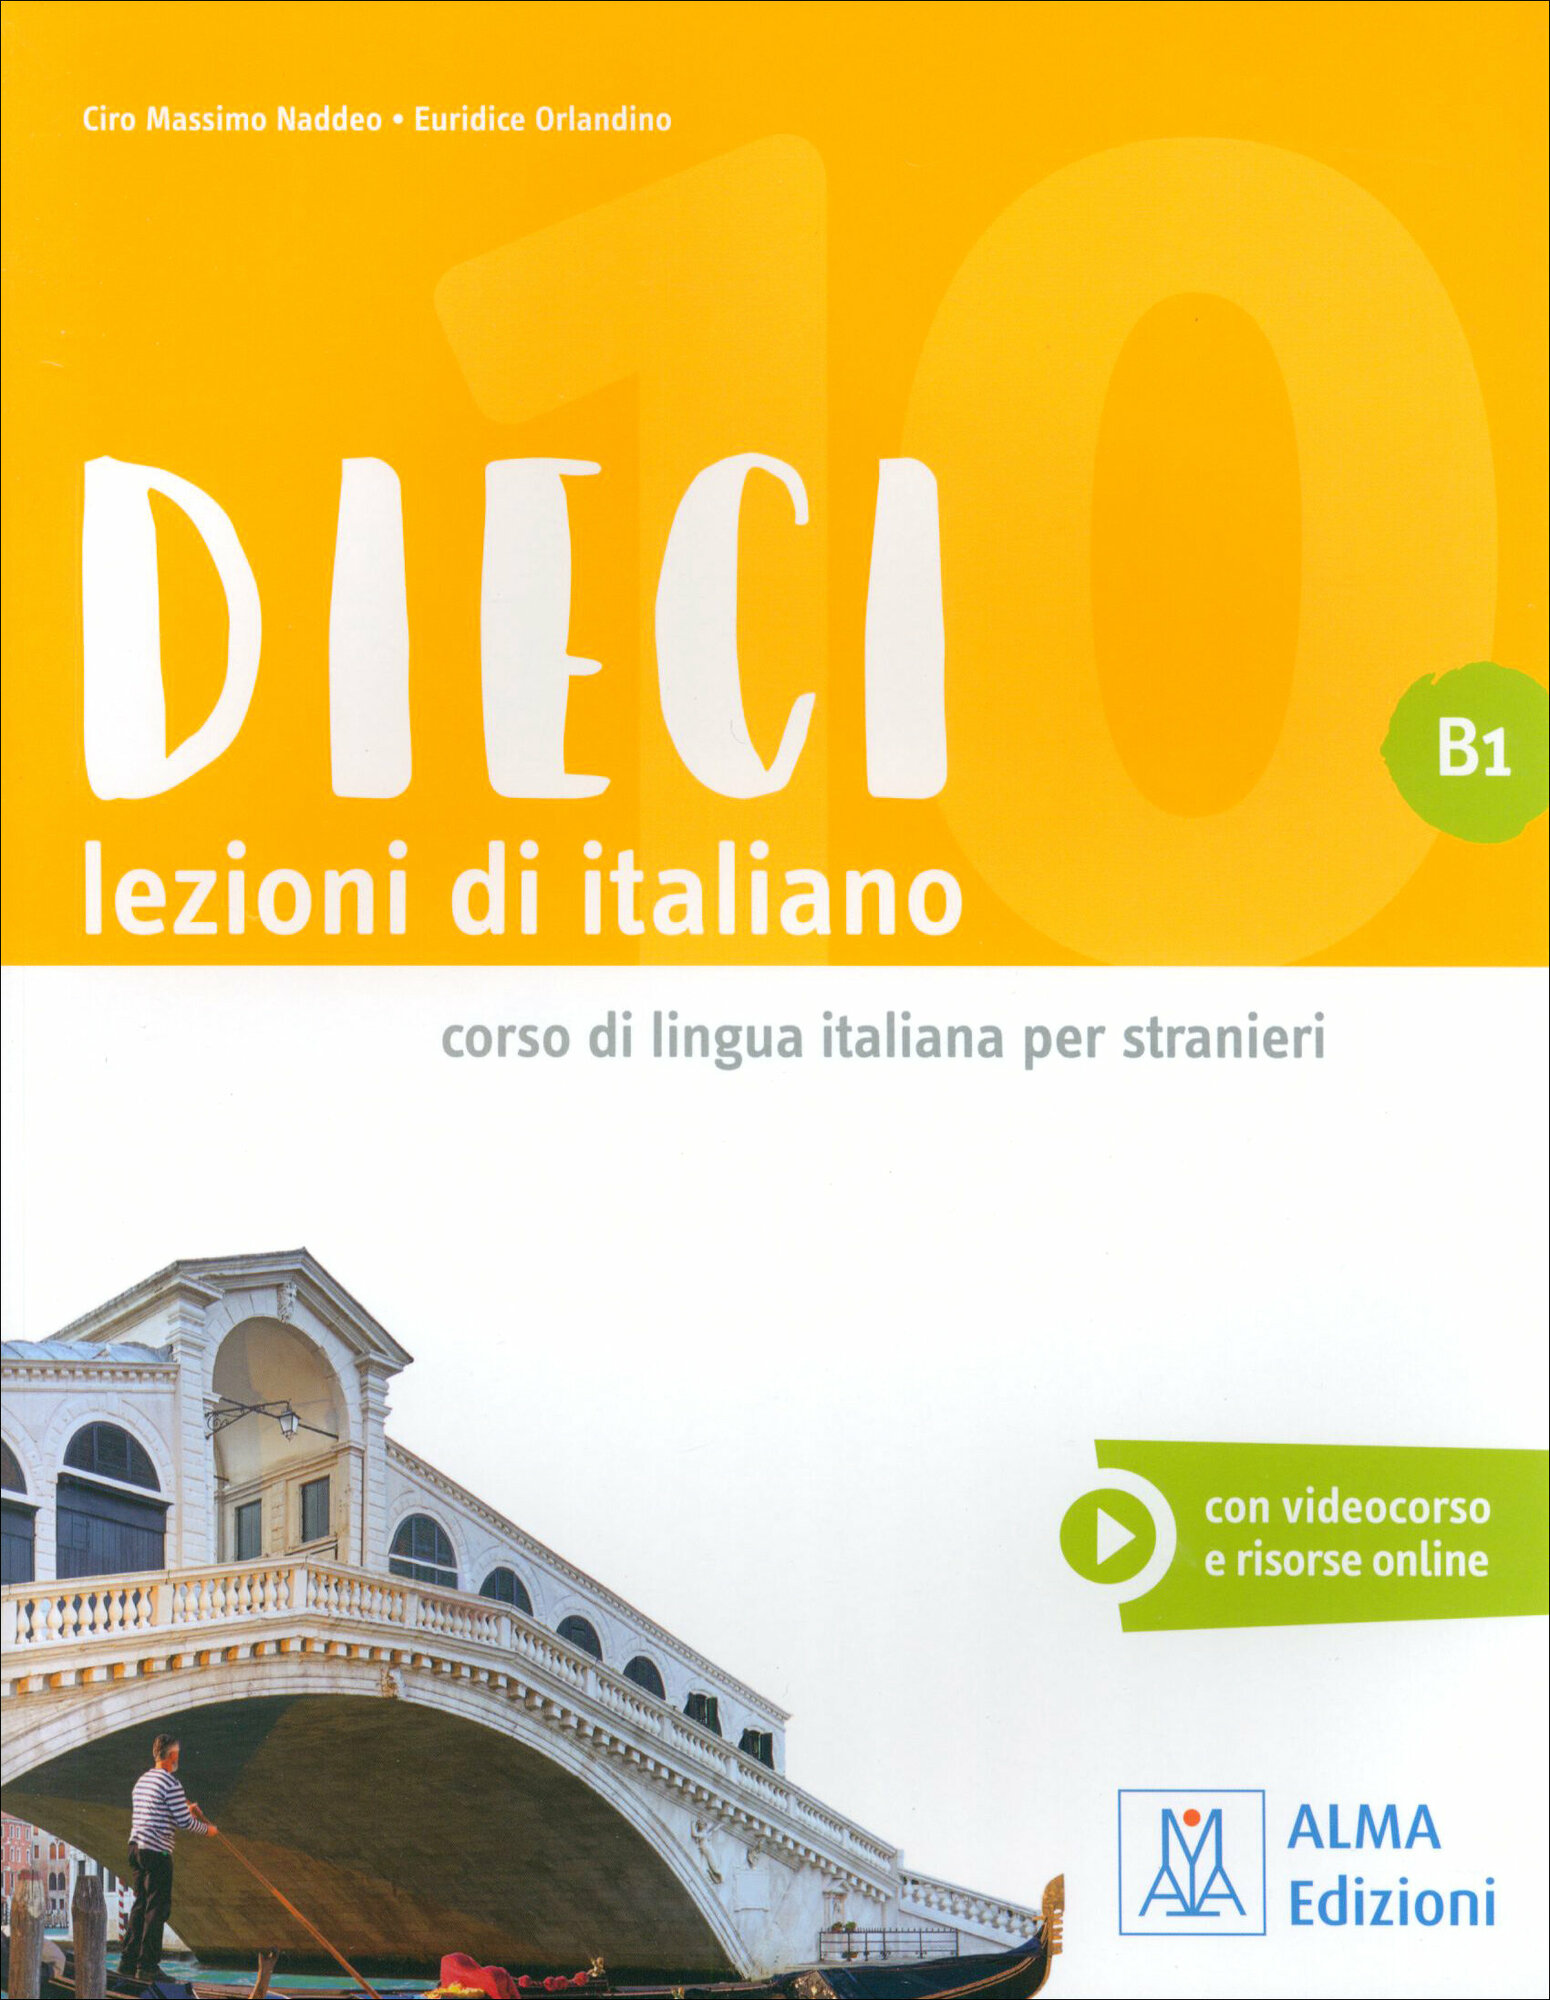 DIECI B1 (Naddeo Ciro Massimo, Orlandino Euridice) - фото №2